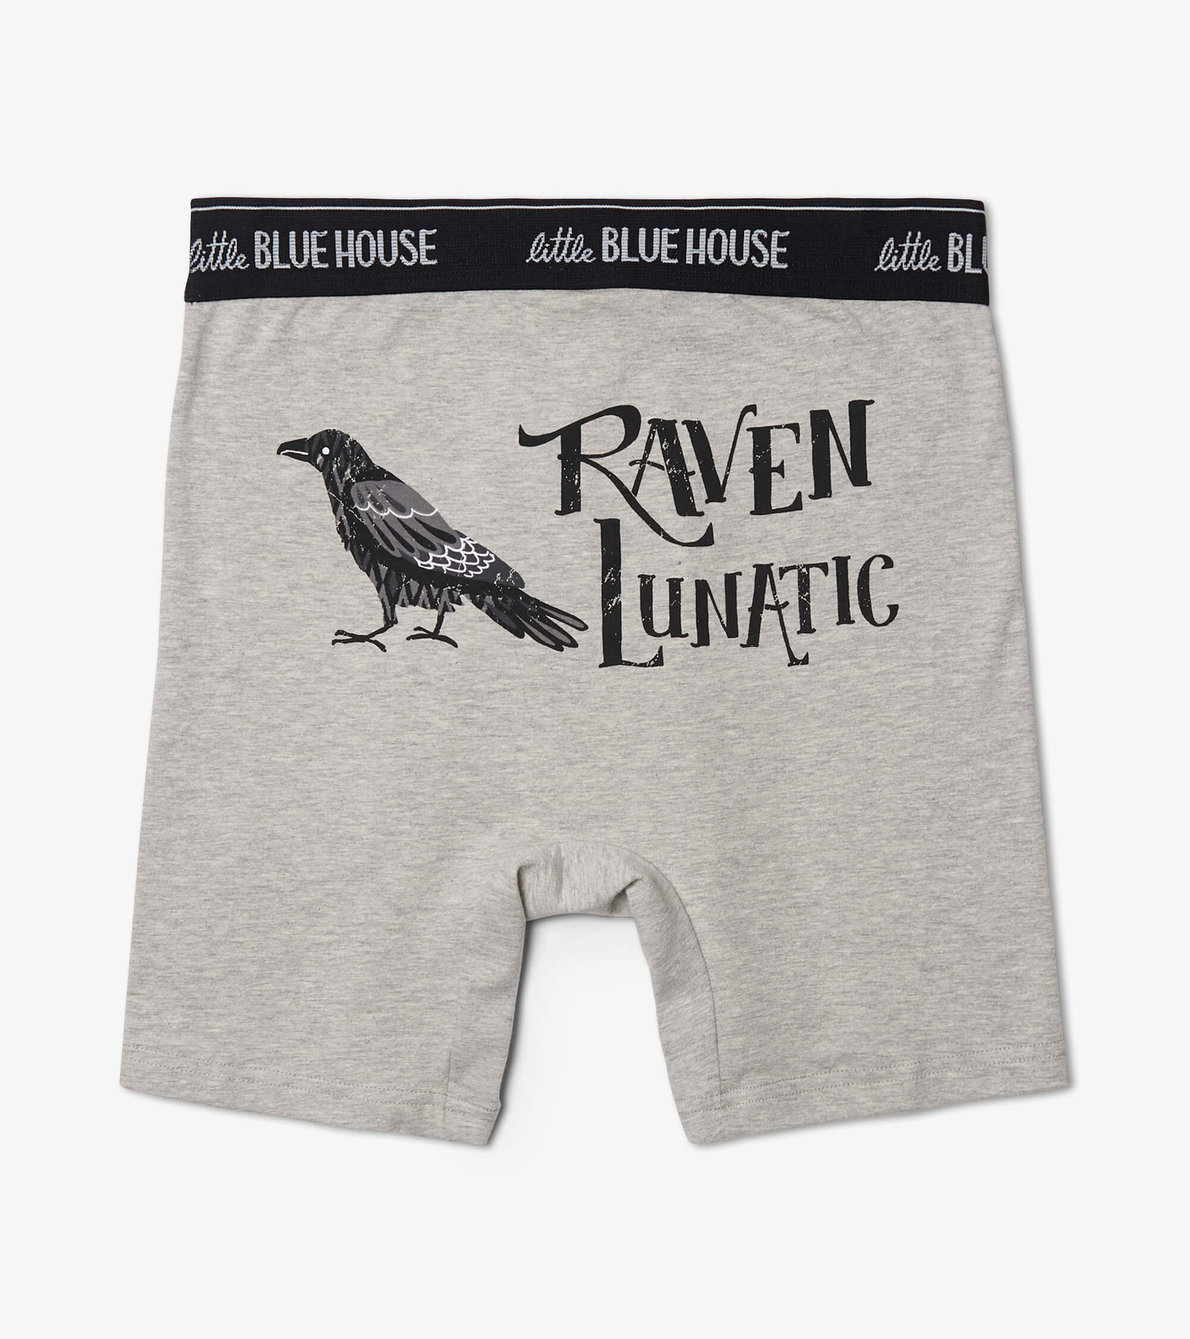 View larger image of Raven Lunatic Men's Boxer Briefs